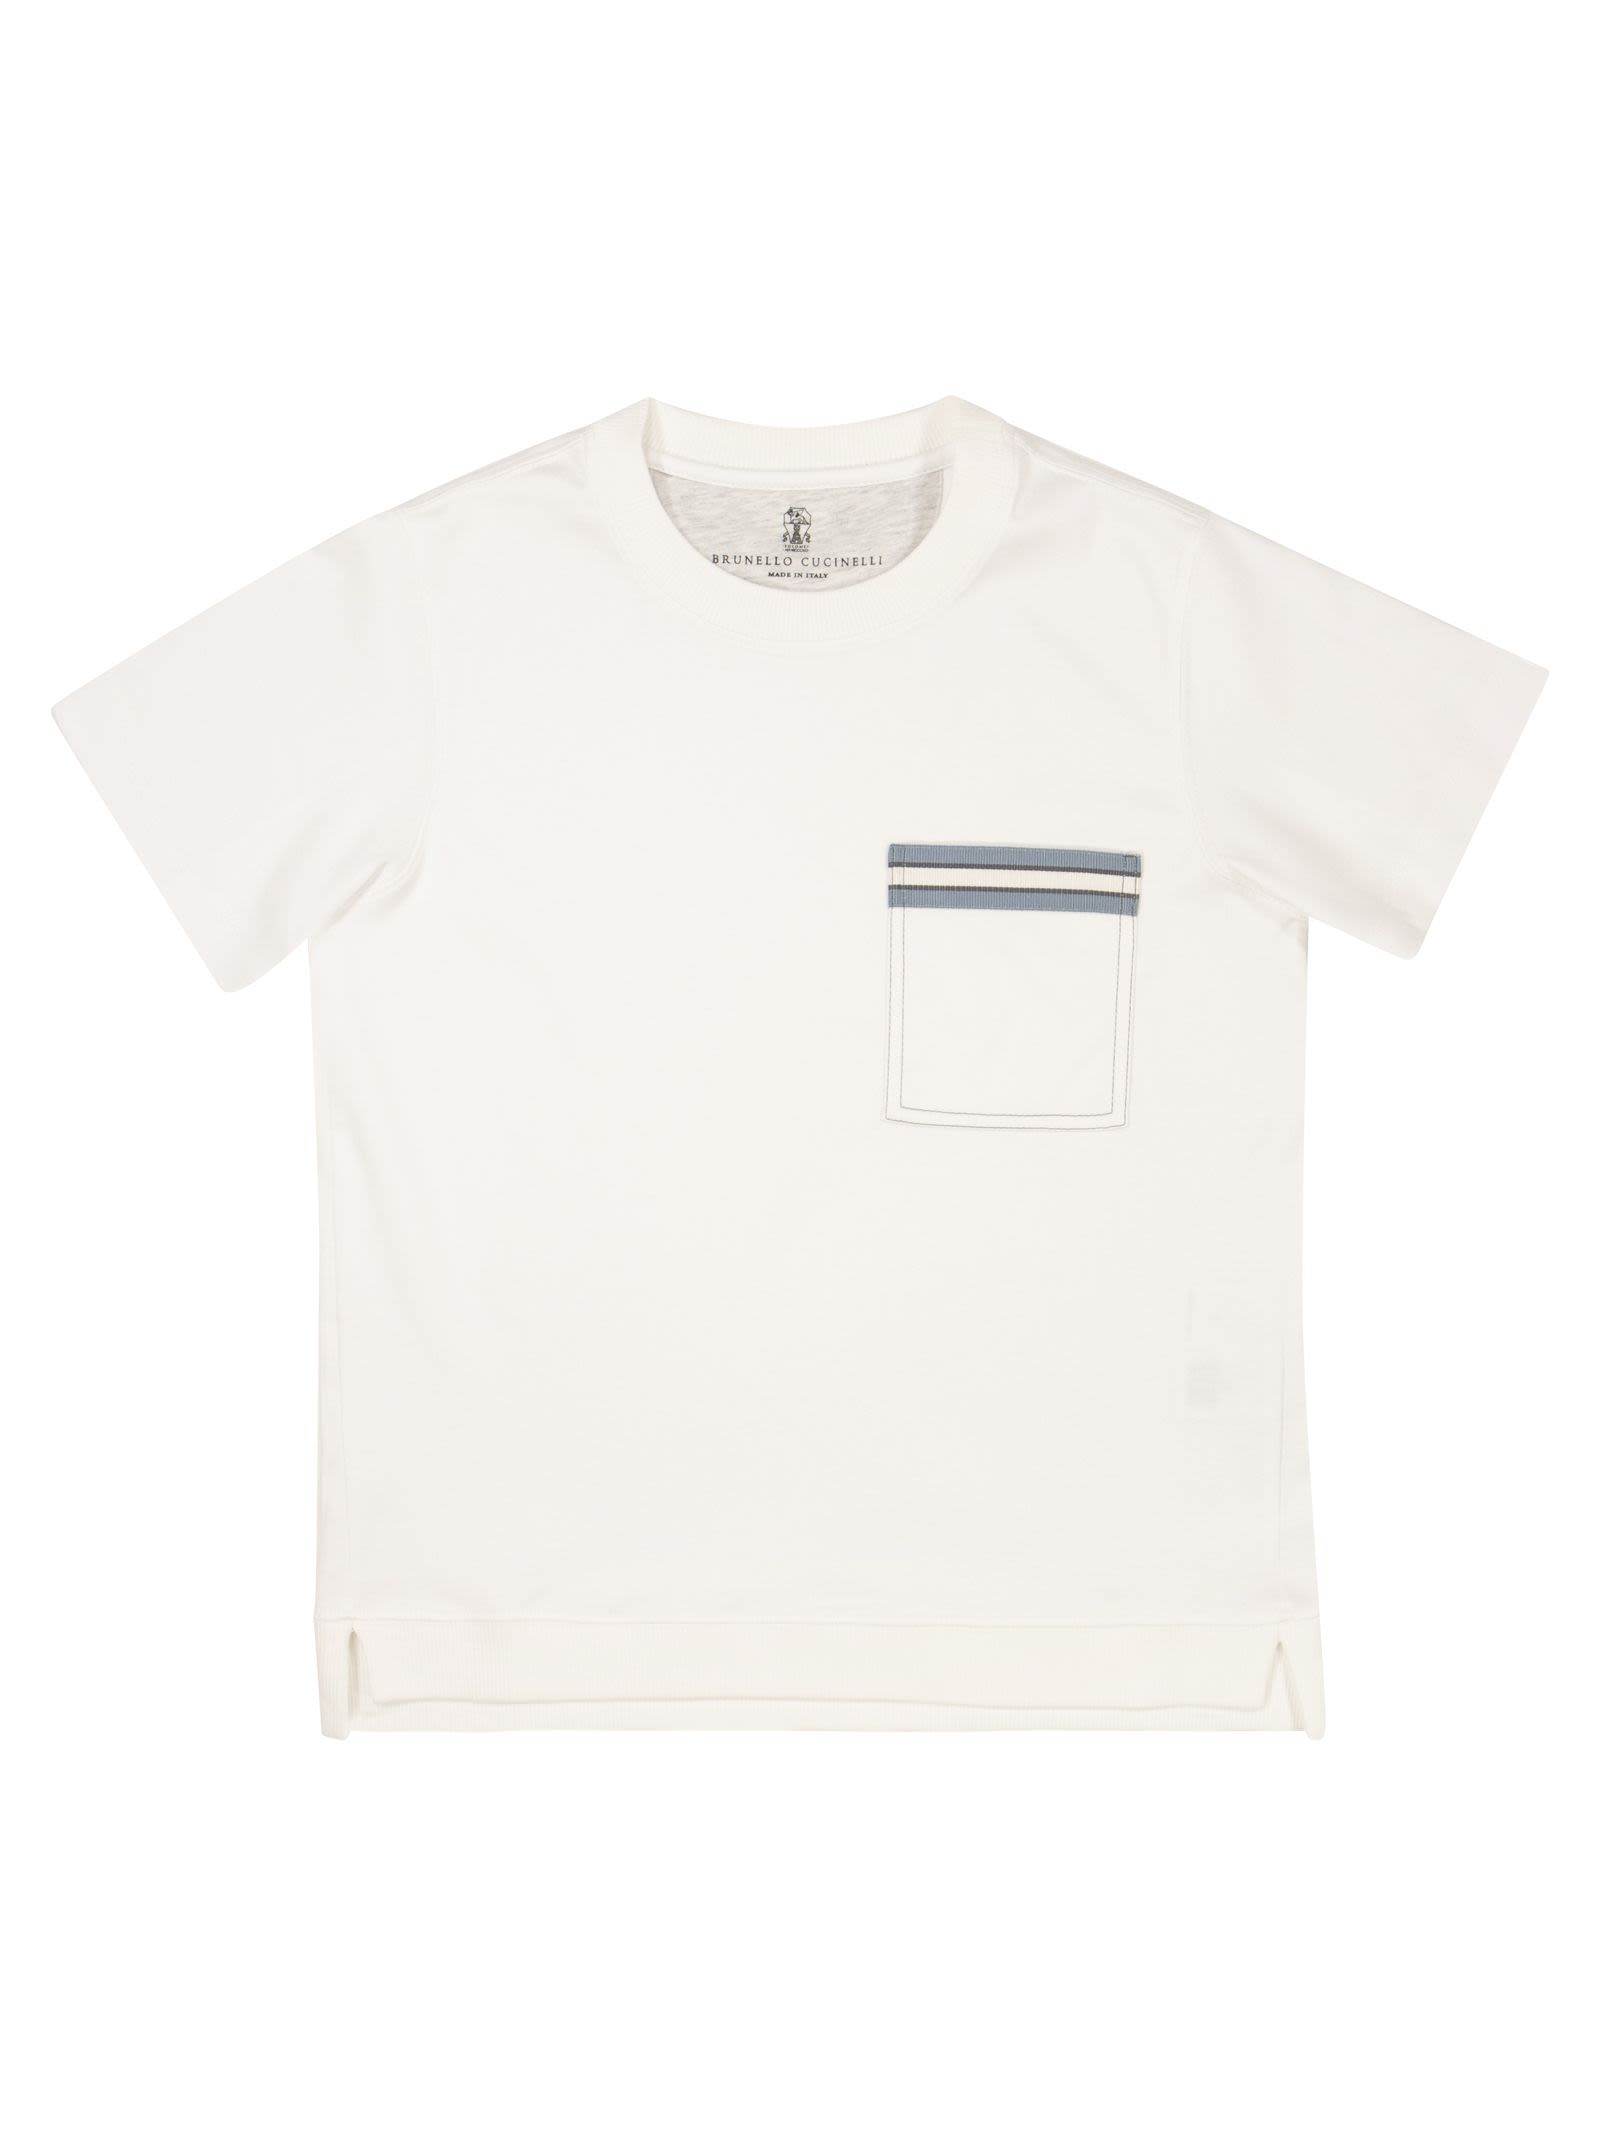 Cotton jersey T-shirt with grosgrain insert - Bellettini.com